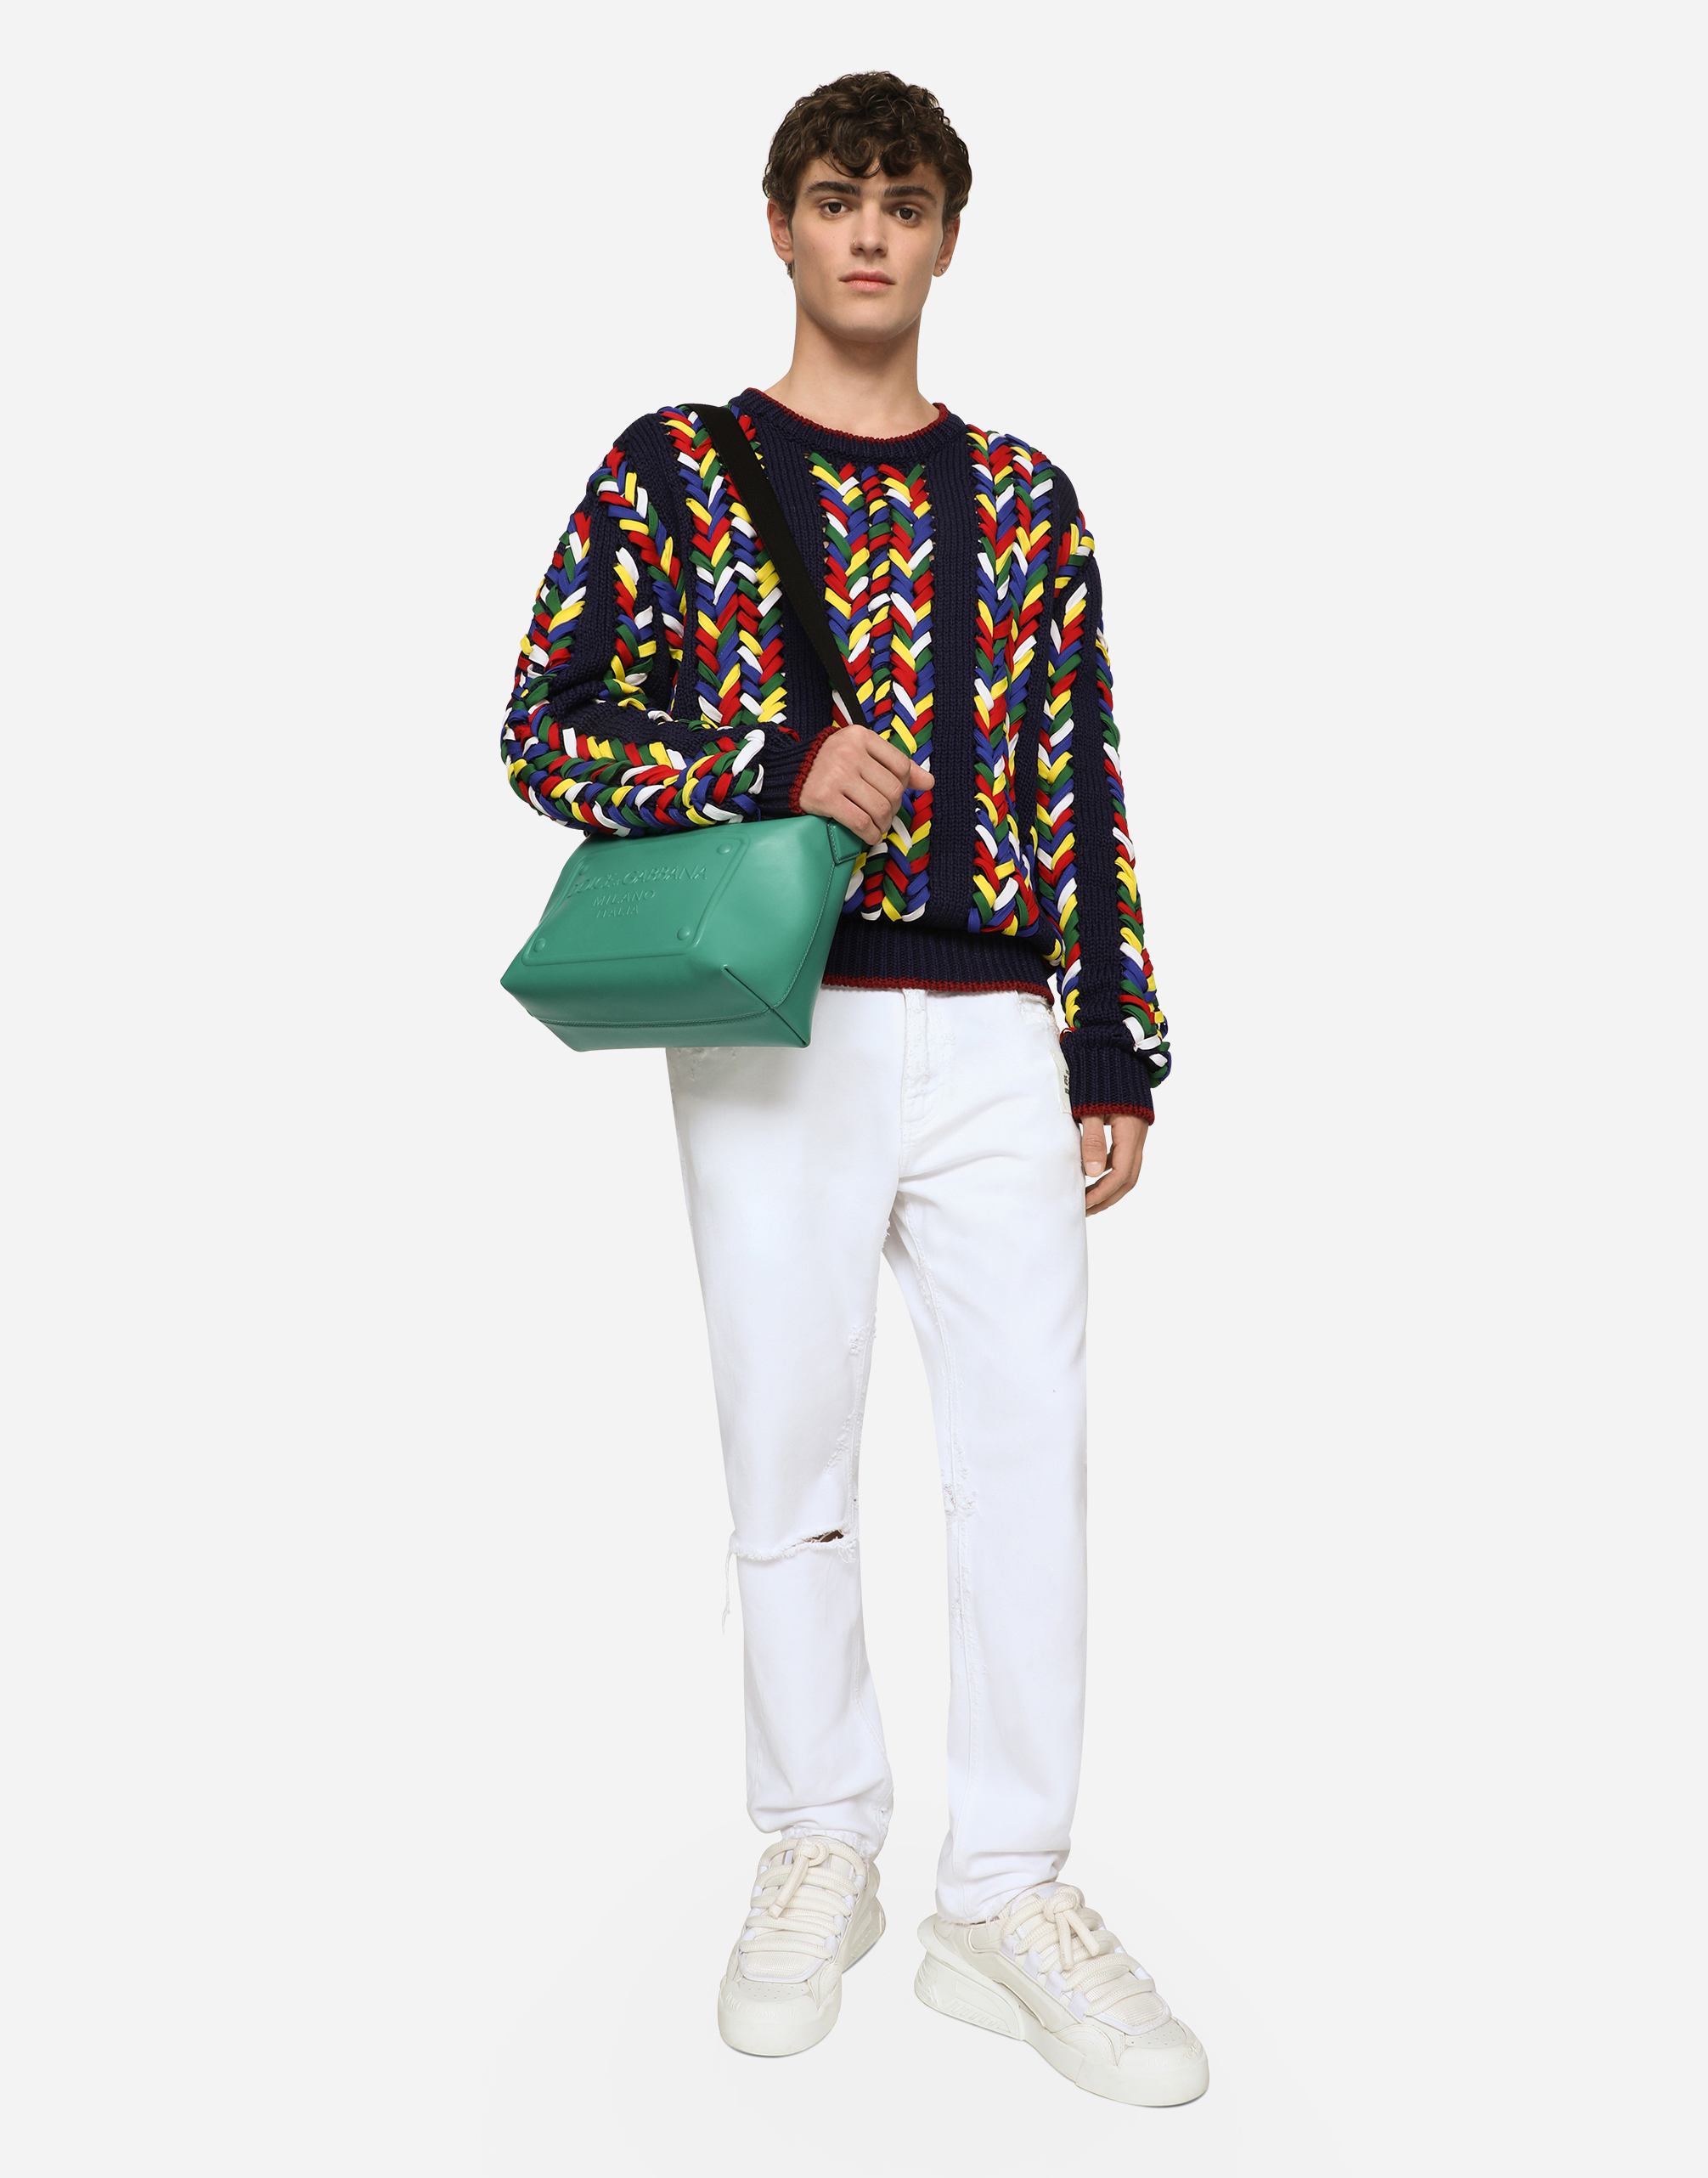 Shop Dolce & Gabbana Calfskin Crossbody Bag With Raised Logo In Green